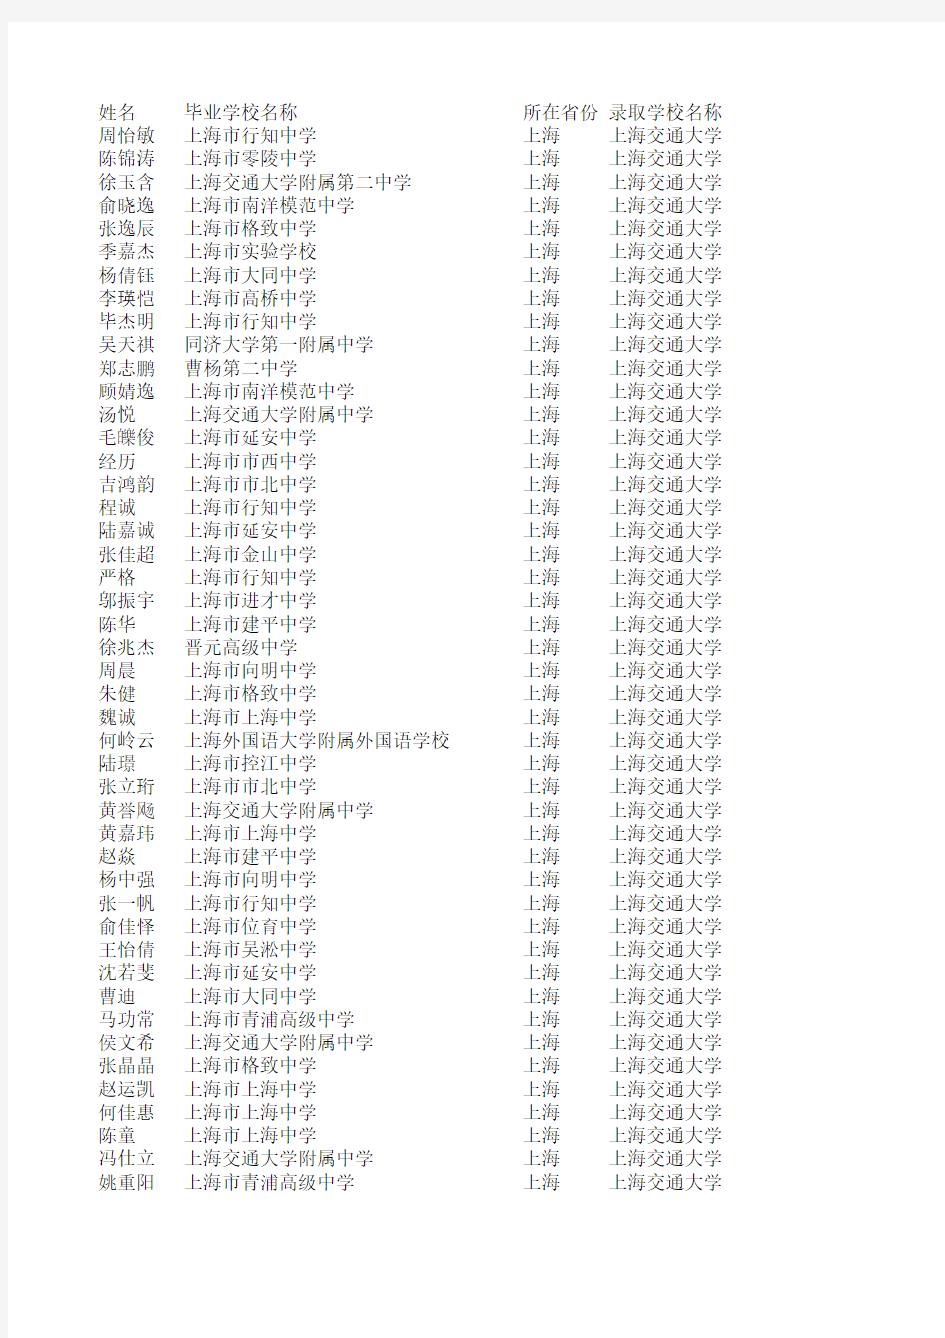 2011年上海交通大学自主招生录取名单(上海考生)